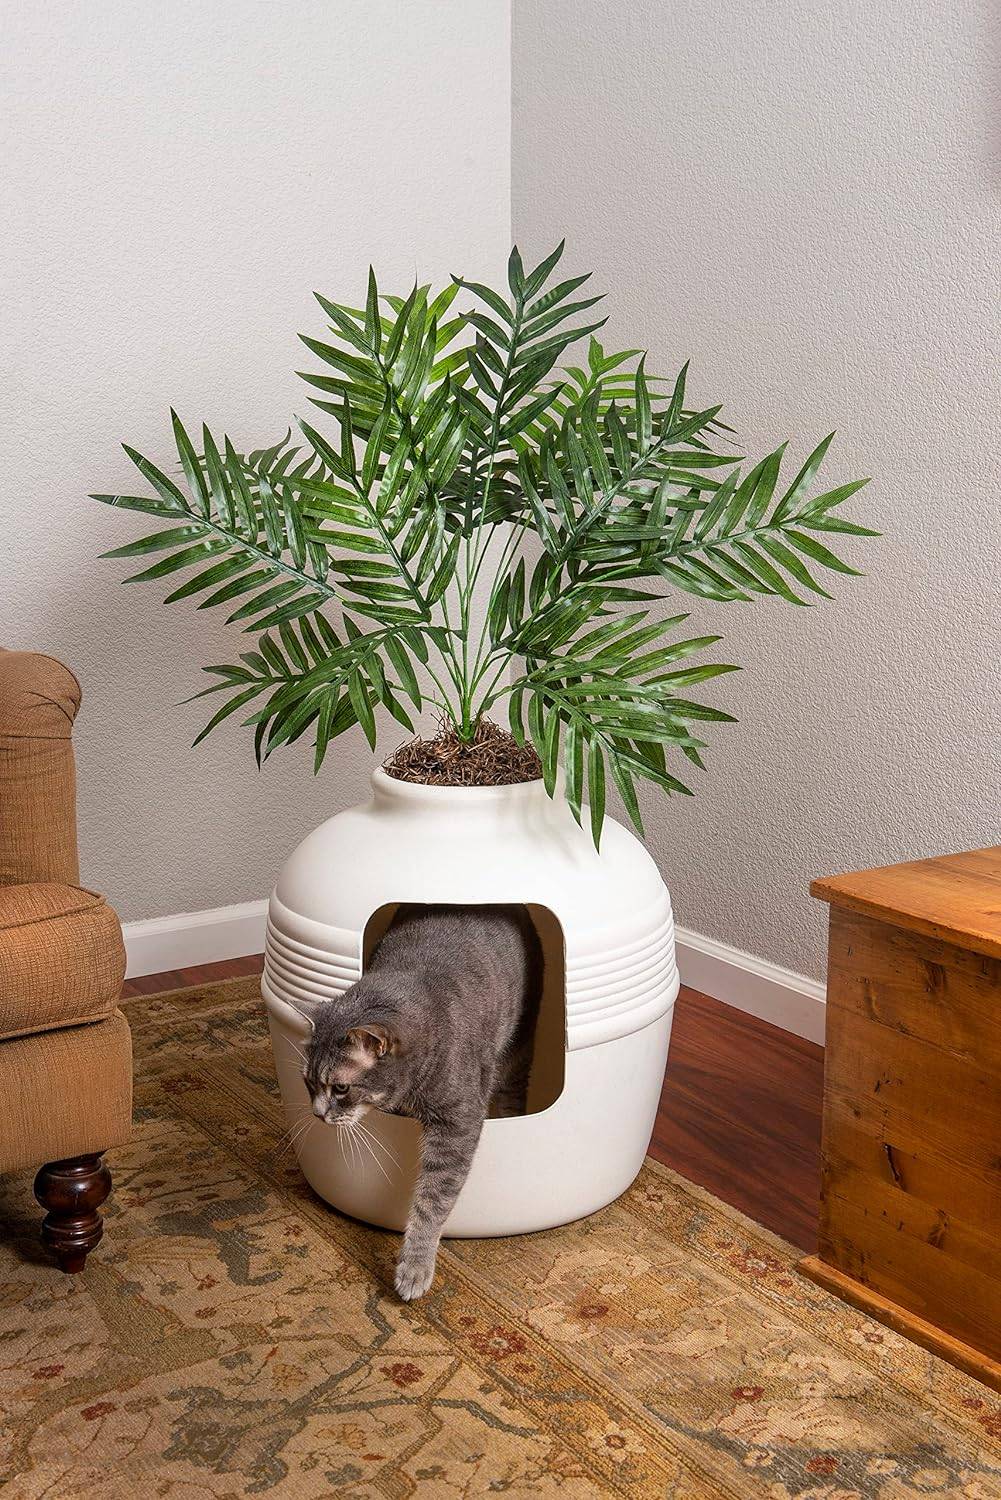 Cat leaving a litter box that is hidden as a planter.